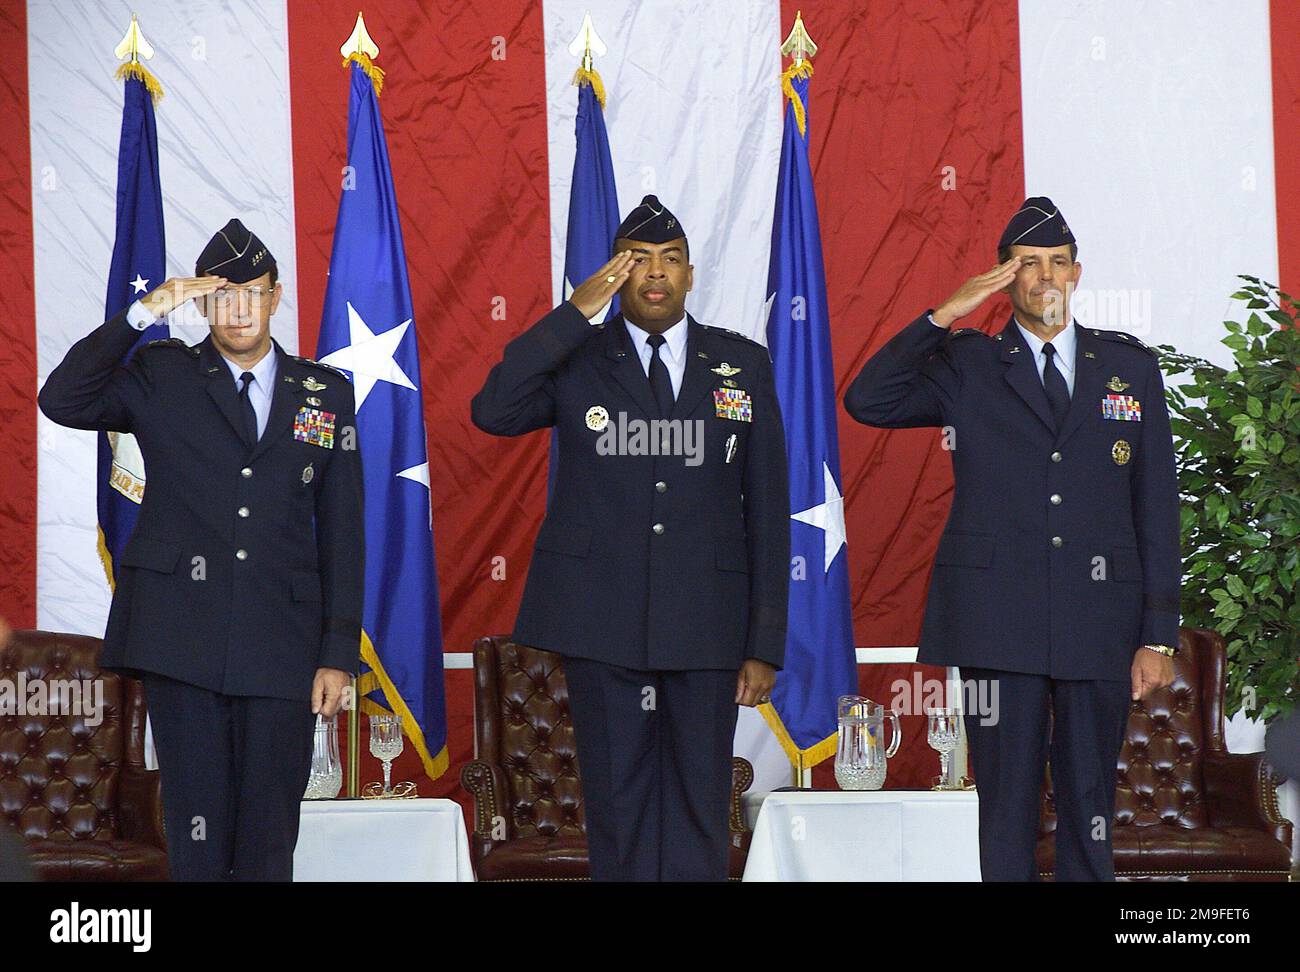 Il generale DELL'aeronautica STATUNITENSE Charles T. Robertson, Jr. (A sinistra), il generale maggiore dell'USAF John D. Hopper, Jr. (Al centro) e il generale maggiore dell'USAF George N. Williams (a destra), salutano la bandiera americana durante l'inno nazionale alla cerimonia del cambio di comando dell'aeronautica militare del 21st, la base dell'aeronautica militare McGuire, New Jersey. Il comando della 21st Air Force è passato da MGEN John D. Hopper, Jr. A MGEN George N. Williams. ROBERTSON, comandante del comando della mobilità aerea, ha presieduto la cerimonia. Sede centrale, 21st Air Force è responsabile della valutazione della disponibilità operativa e della raccomandazione di i Foto Stock